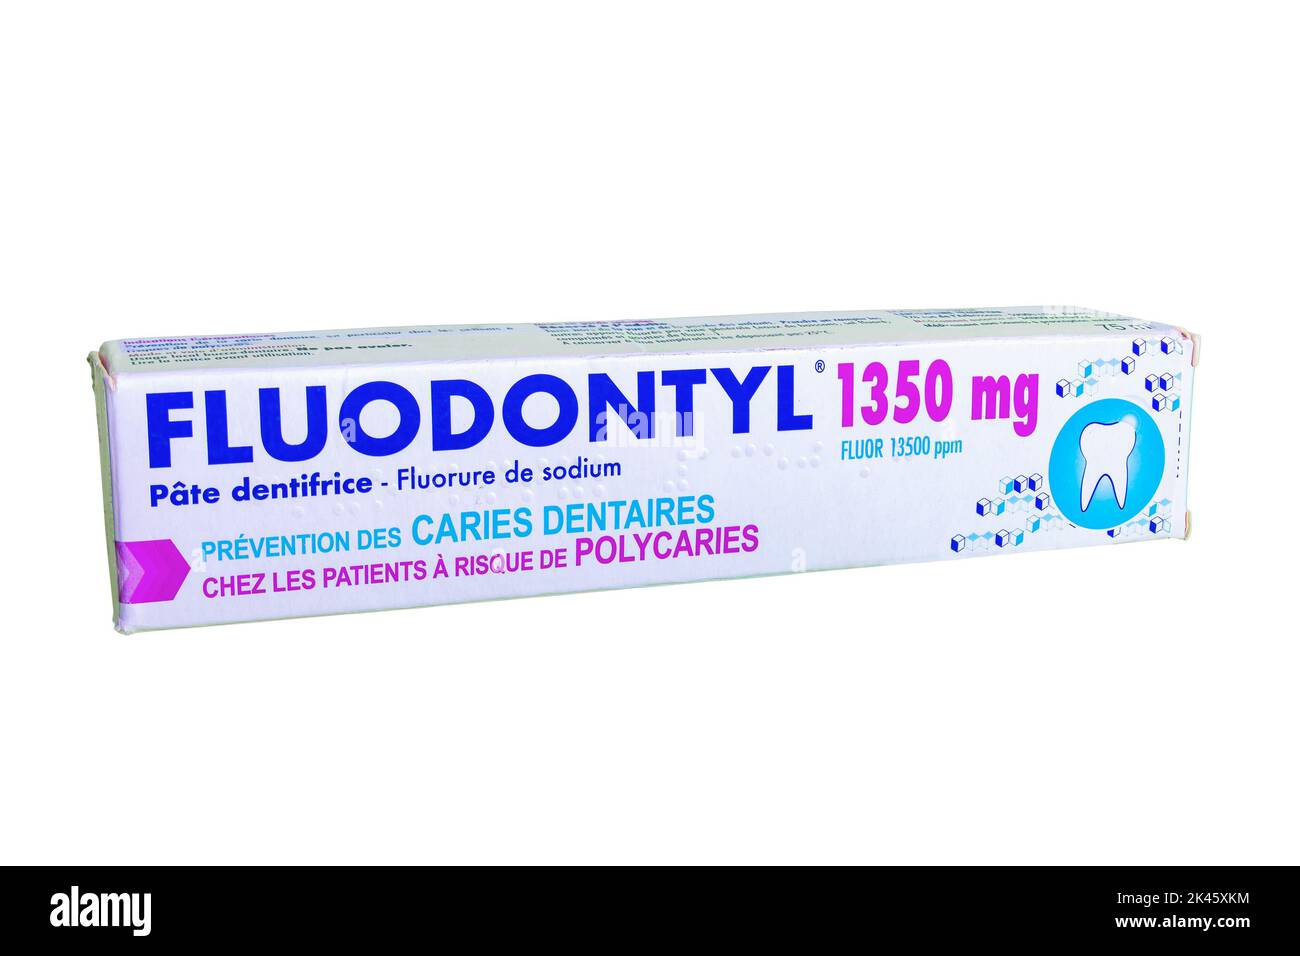 Huelva, Espagne - 30 septembre 2022: Fluodontyl 1350mg, dentifrice au fluorure très élevé, pour la prévention des caries dentaires, en particulier chez les patients à risque Banque D'Images